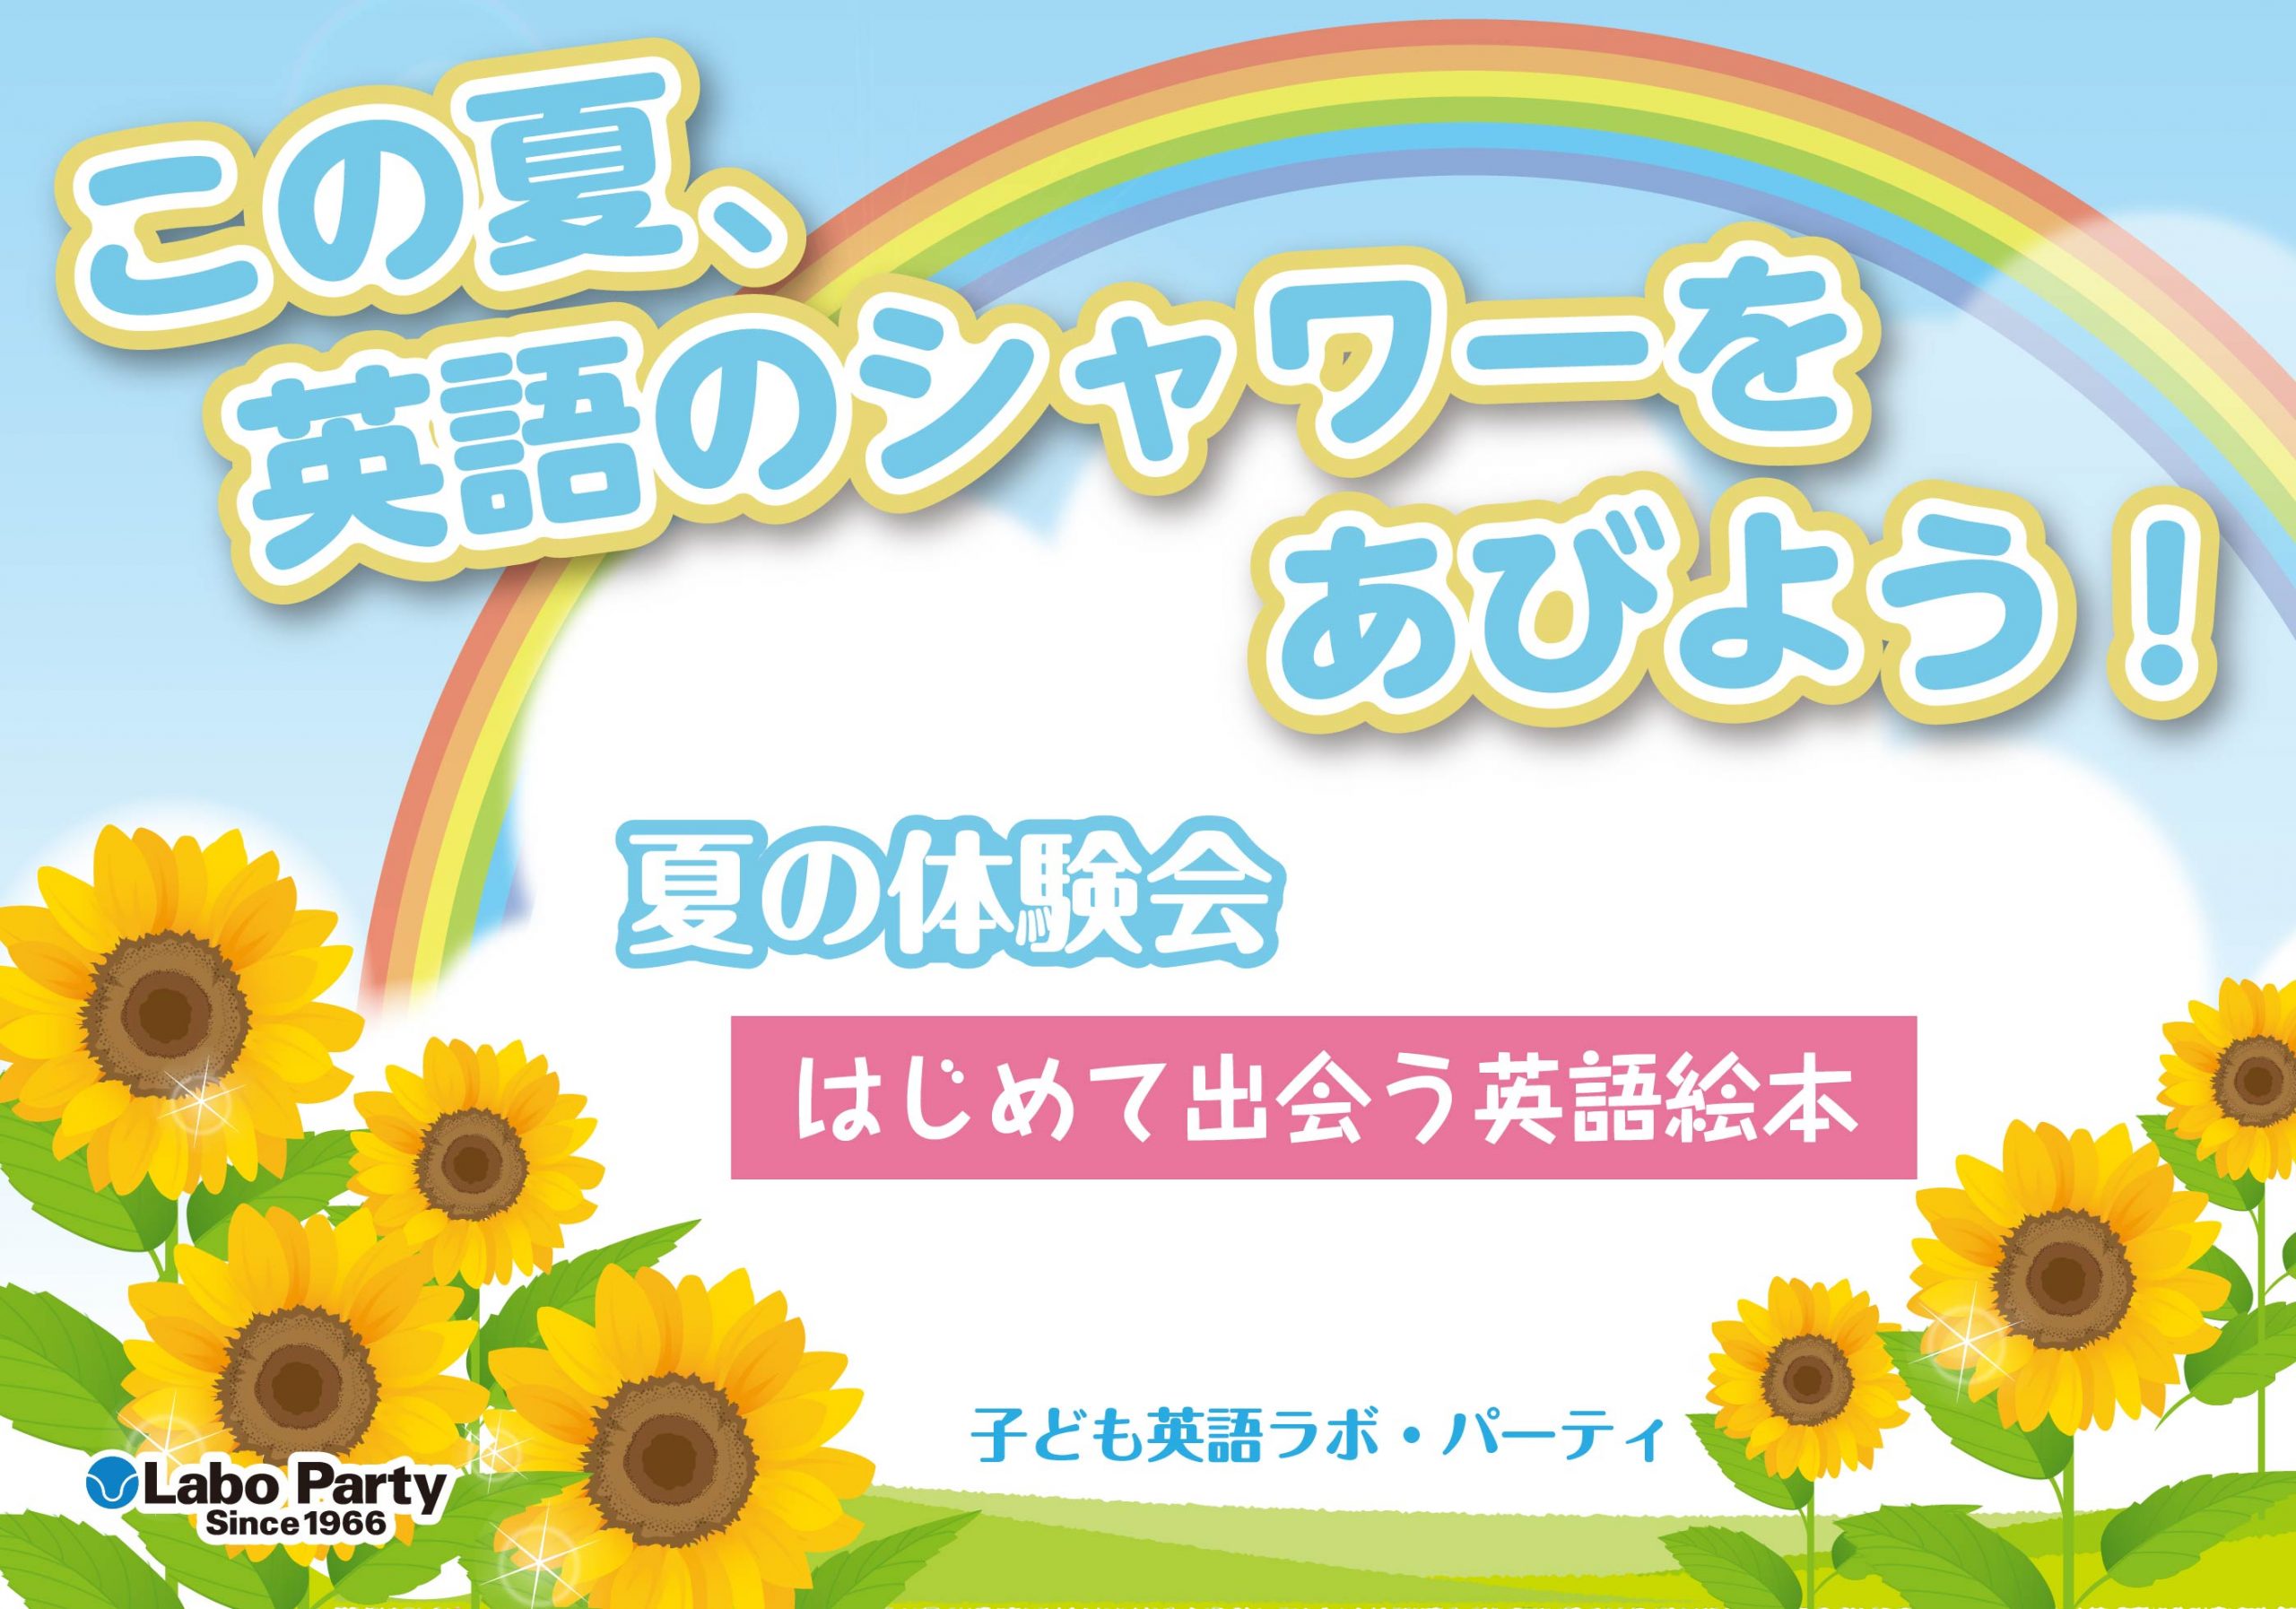 ラボ・パーティ 宇都宮市平出町教室(神山パーティ)のこの夏、英語のシャワーをあびよう！